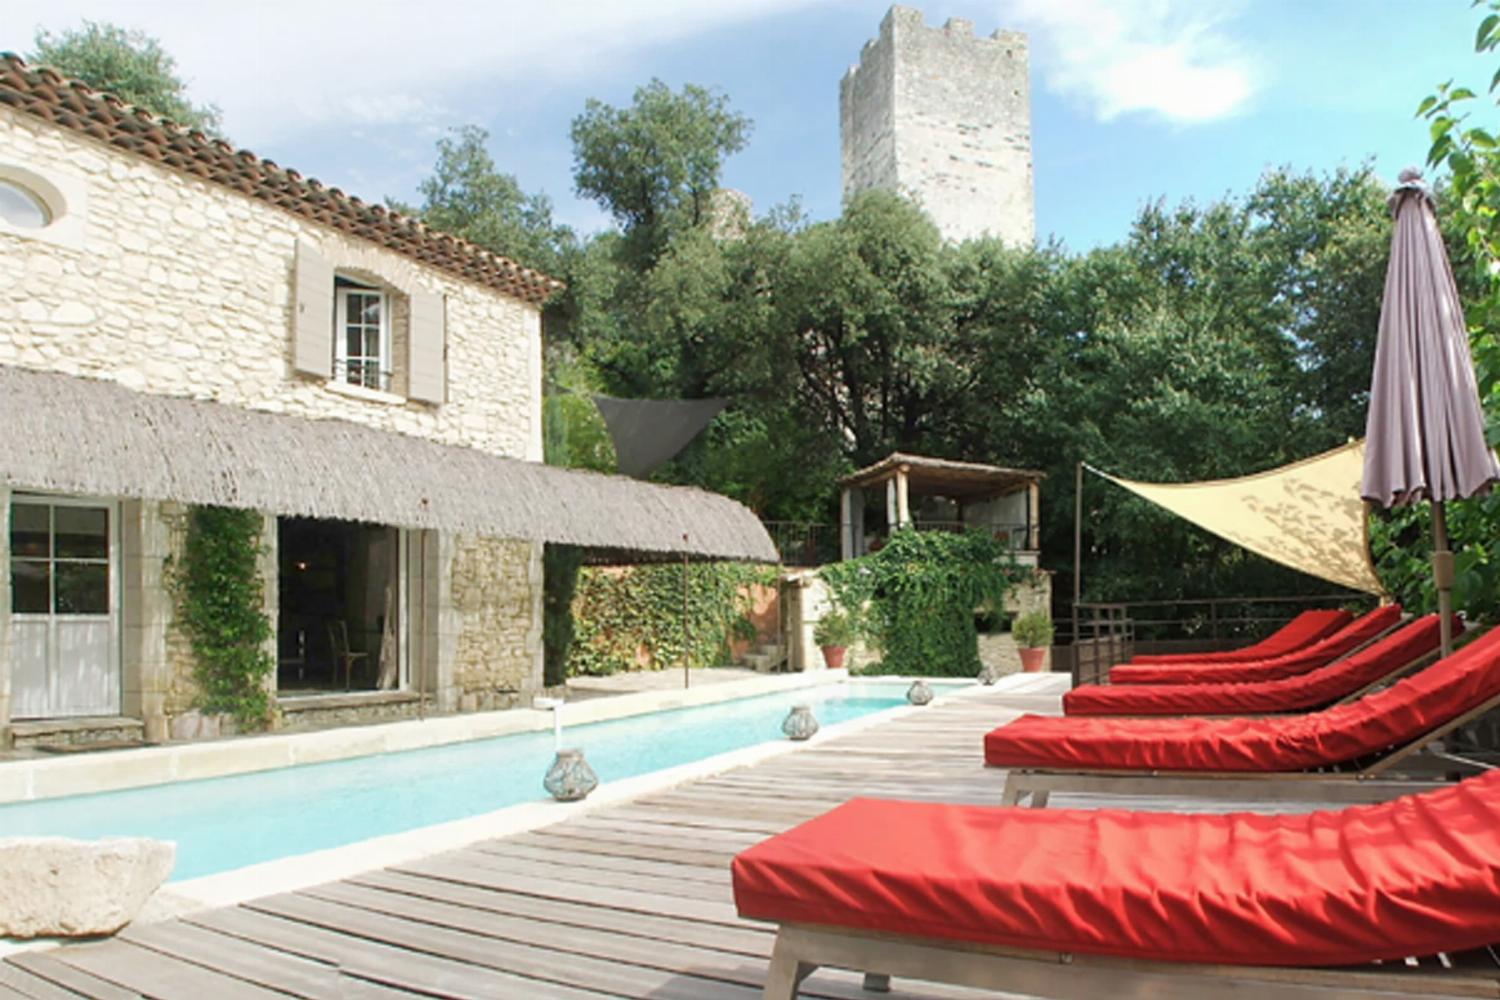 Maison de vacances dans le sud de la France avec piscine privée chauffée